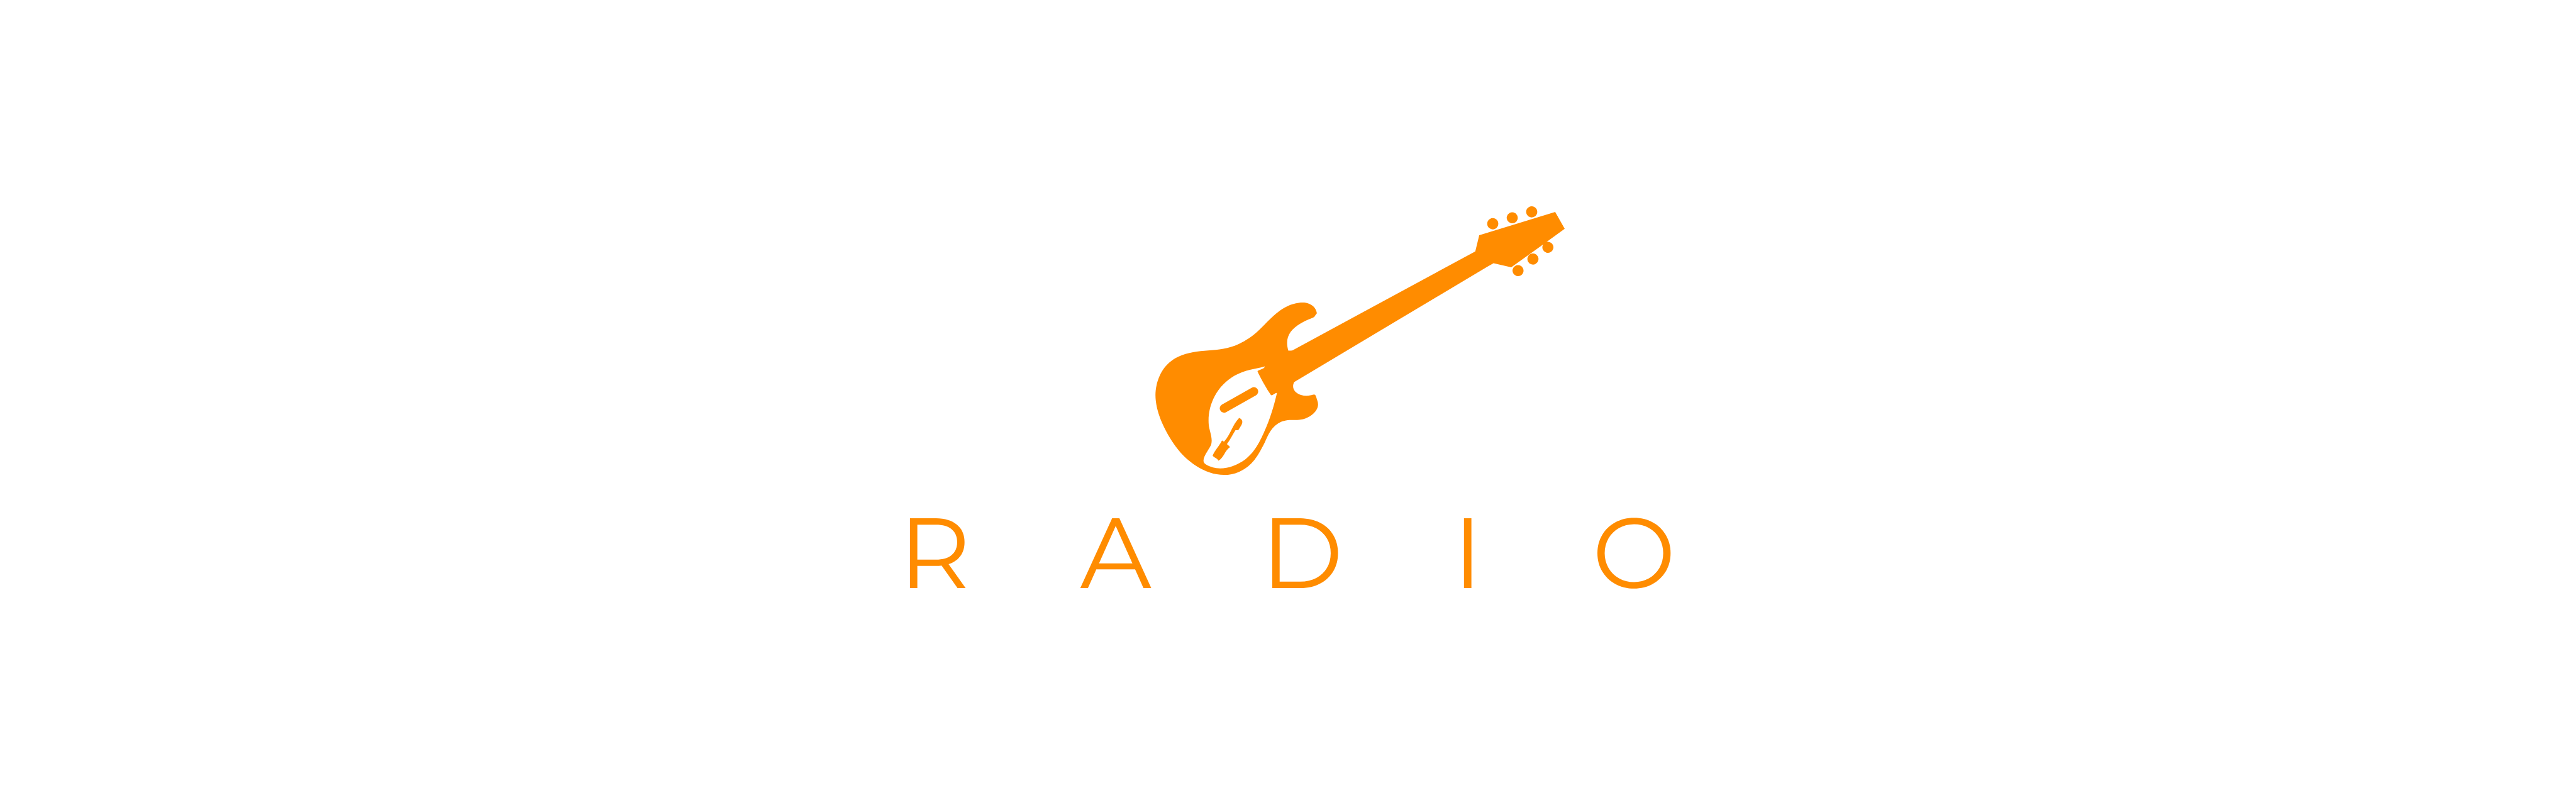 BDPST ROCK - Magyarország rock rádiója